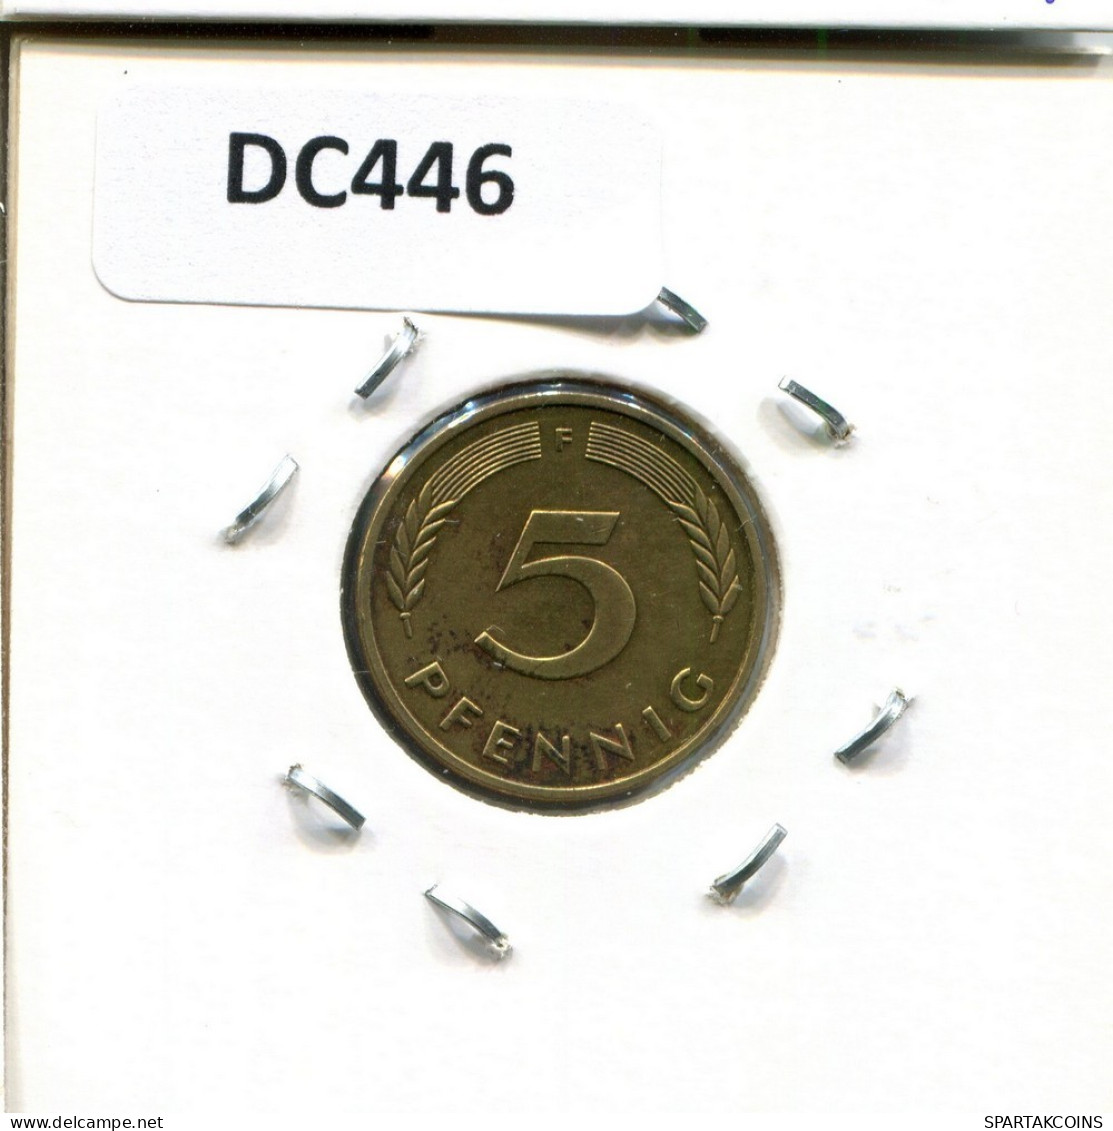 5 PFENNIG 1987 F BRD DEUTSCHLAND Münze GERMANY #DC446.D.A - 5 Pfennig